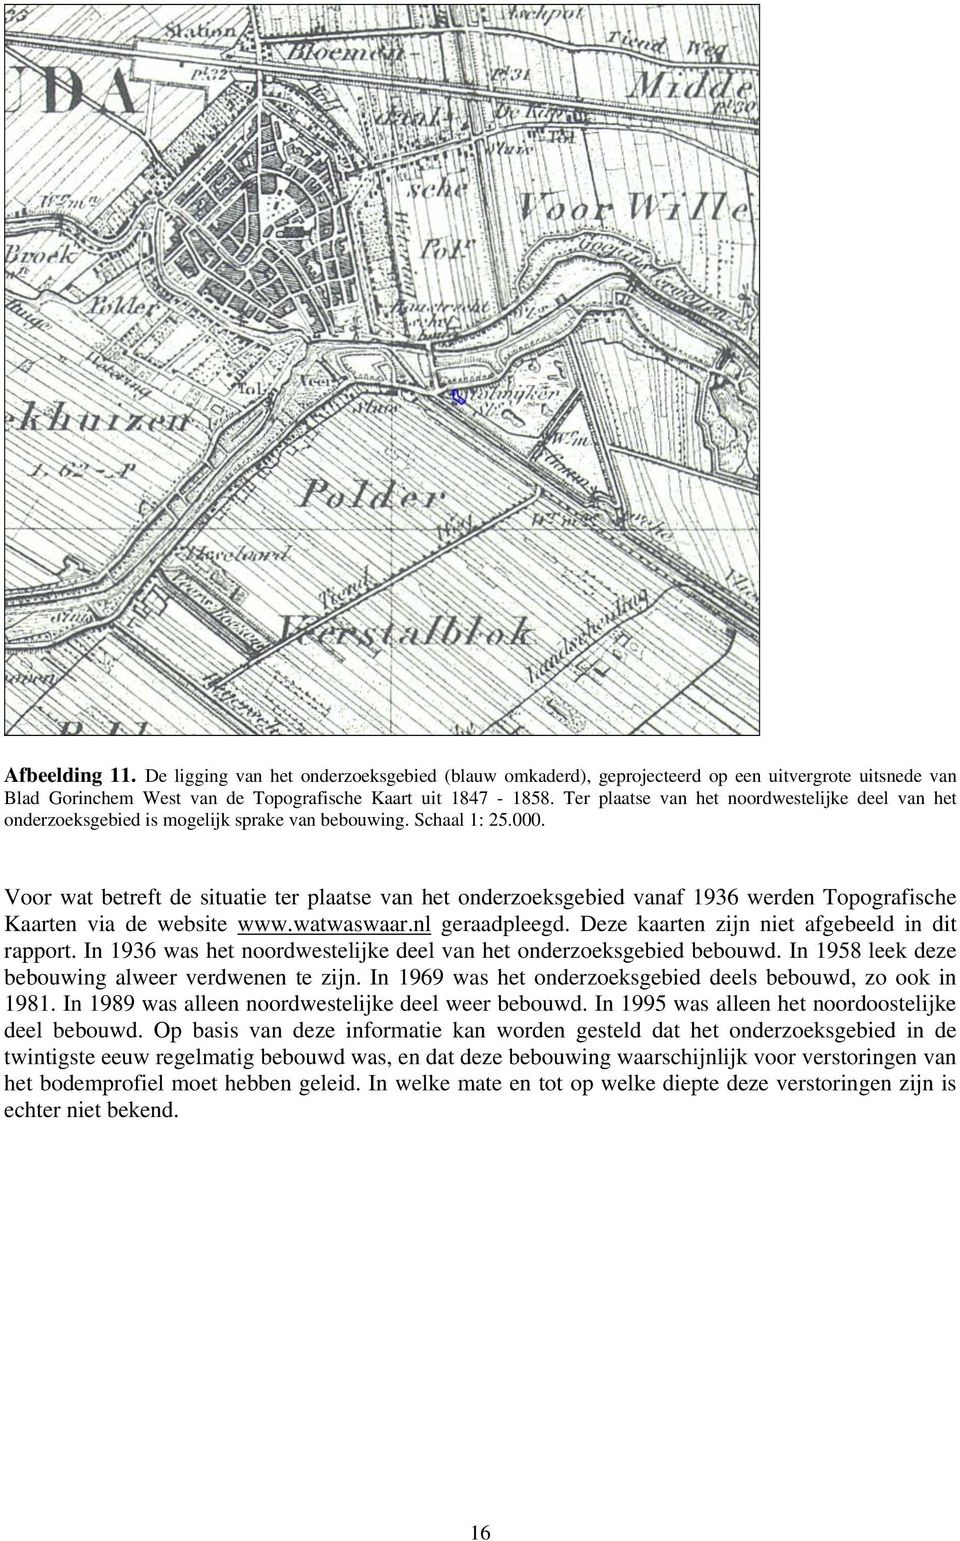 Voor wat betreft de situatie ter plaatse van het onderzoeksgebied vanaf 1936 werden Topografische Kaarten via de website www.watwaswaar.nl geraadpleegd.